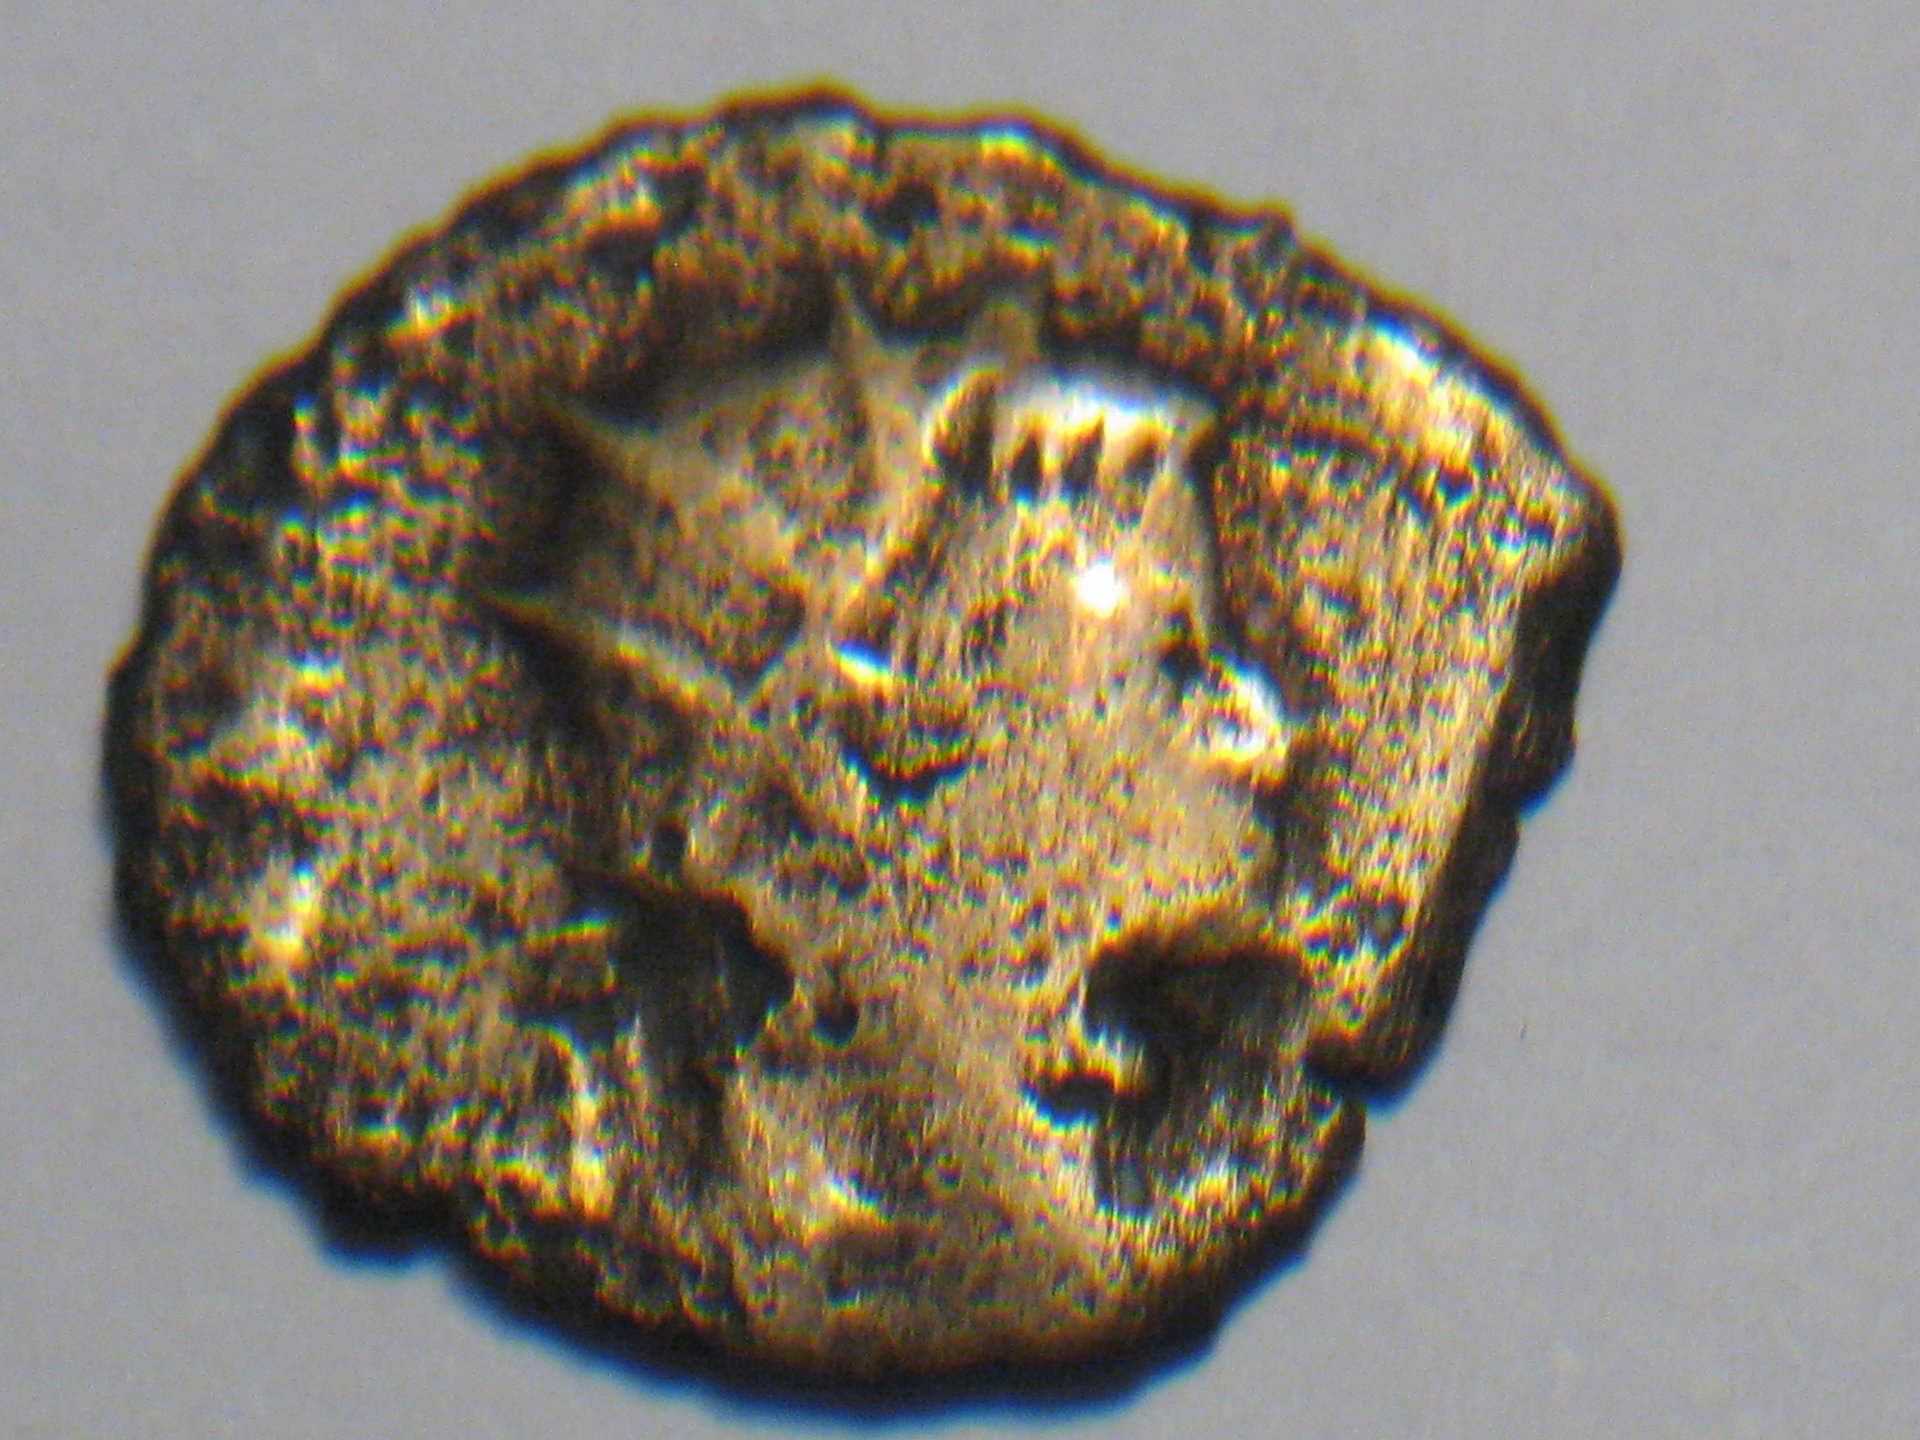 herennius etruscus 004.JPG